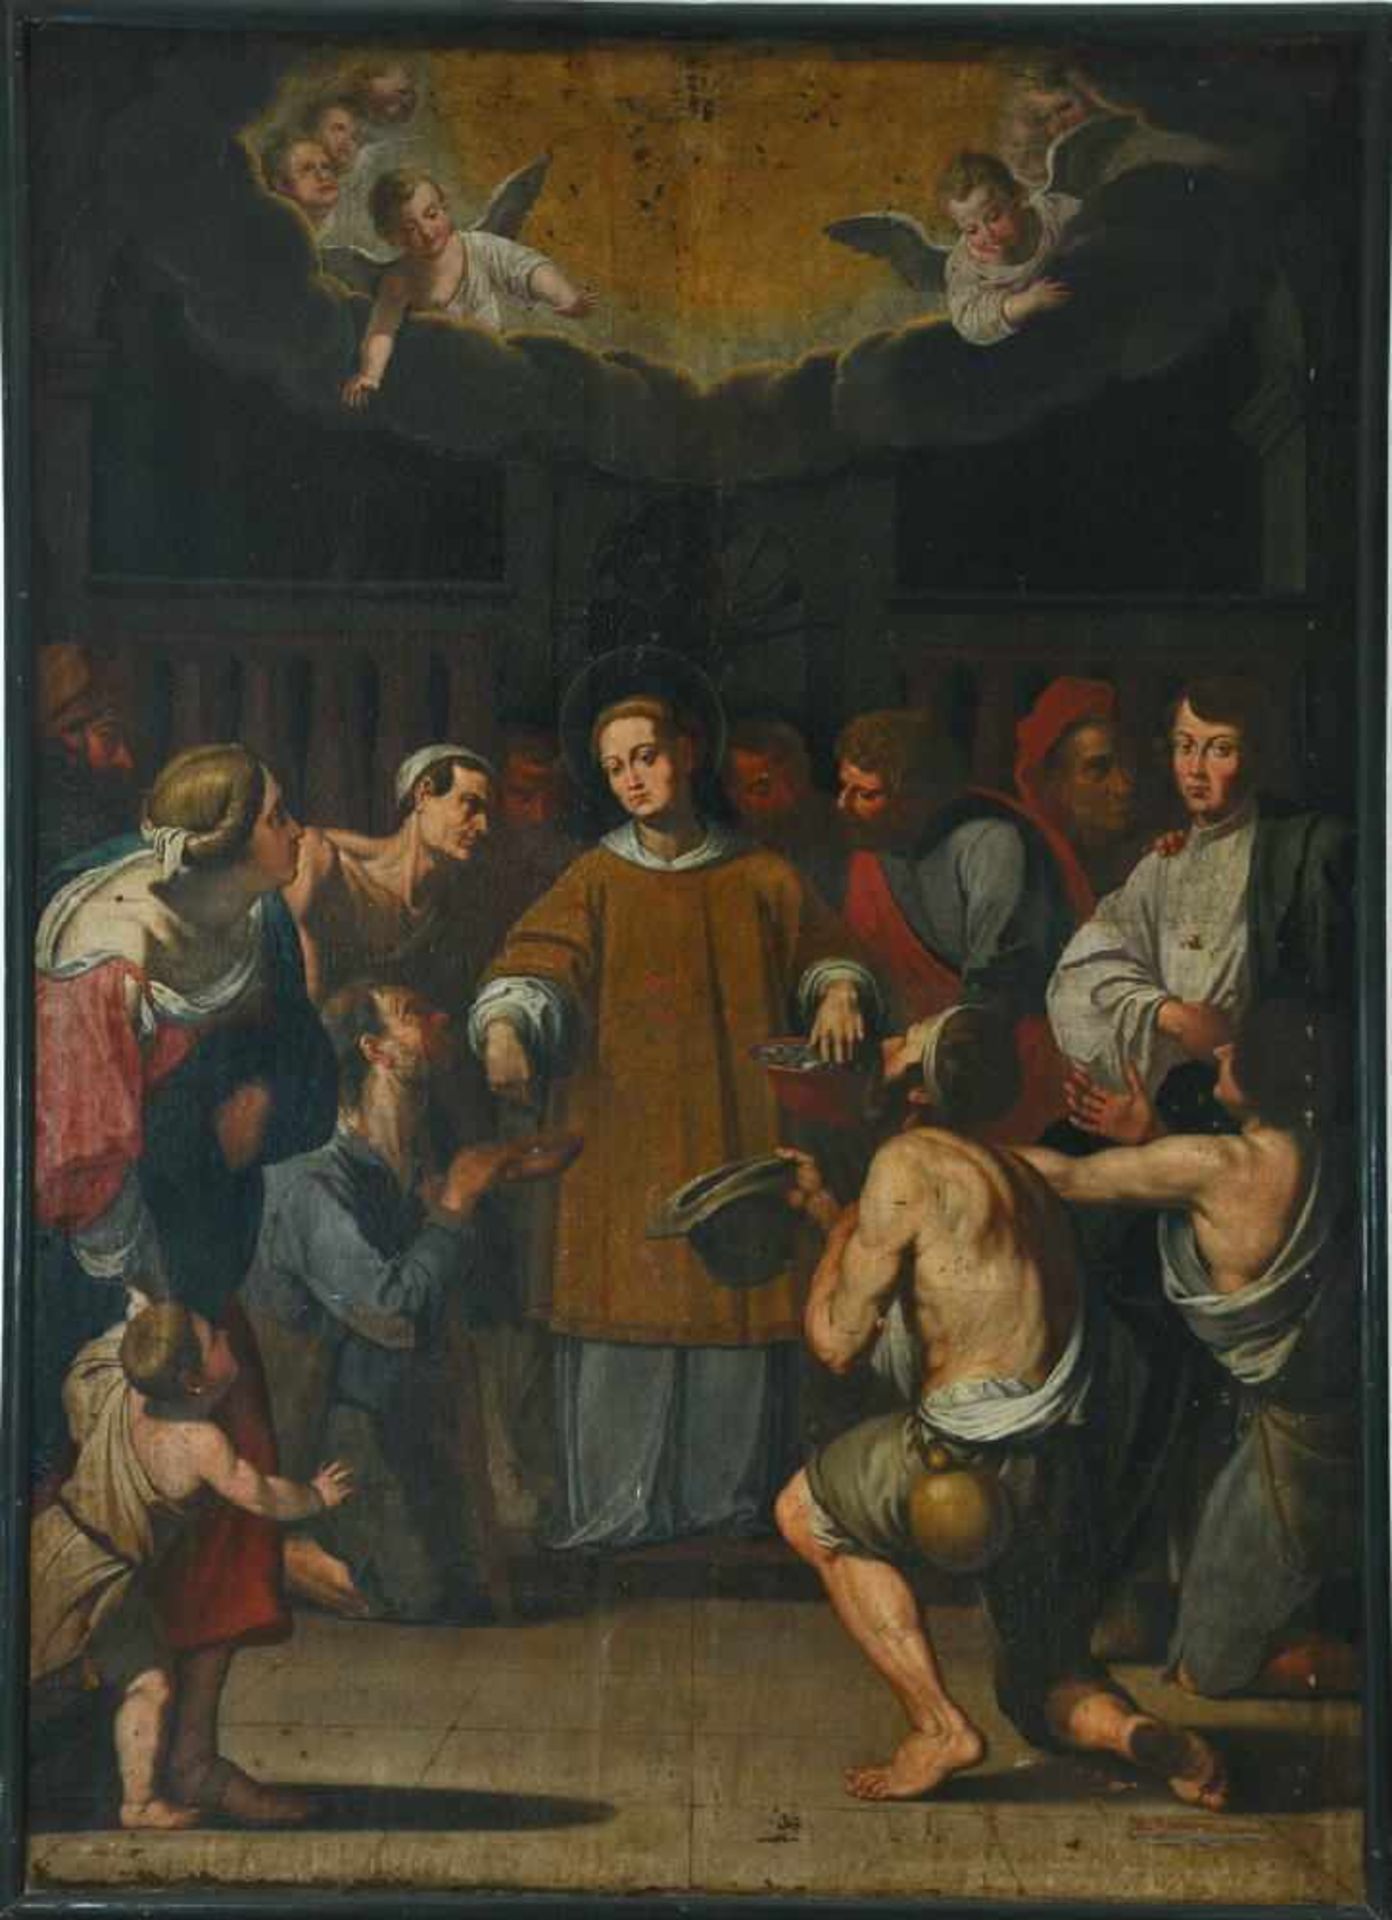 Bildnismaler des 18. Jh.Öl/Lwd, 283 x 204 cm, " Der Heilige Laurentius verteilt den Kirchenschatz an